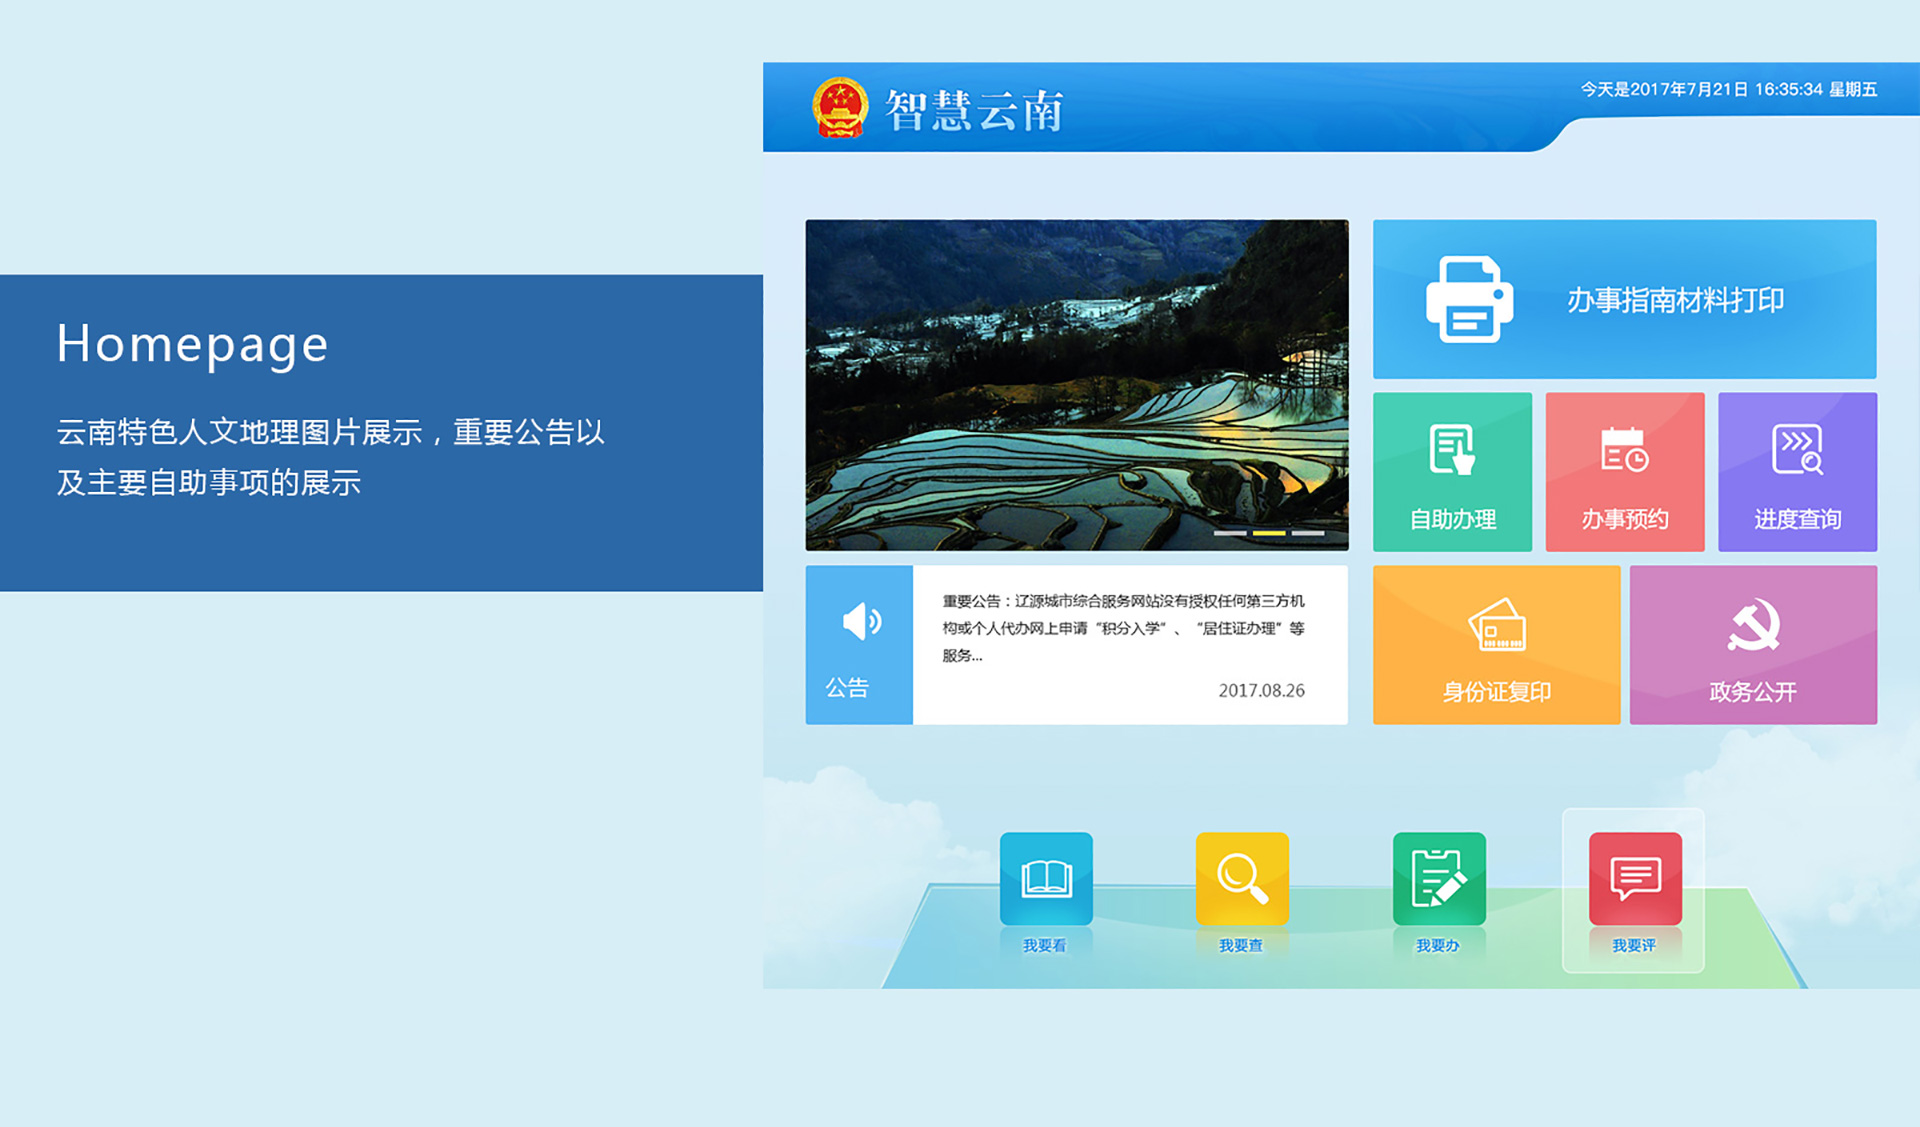 智慧云南政务网设备端UI界面设计